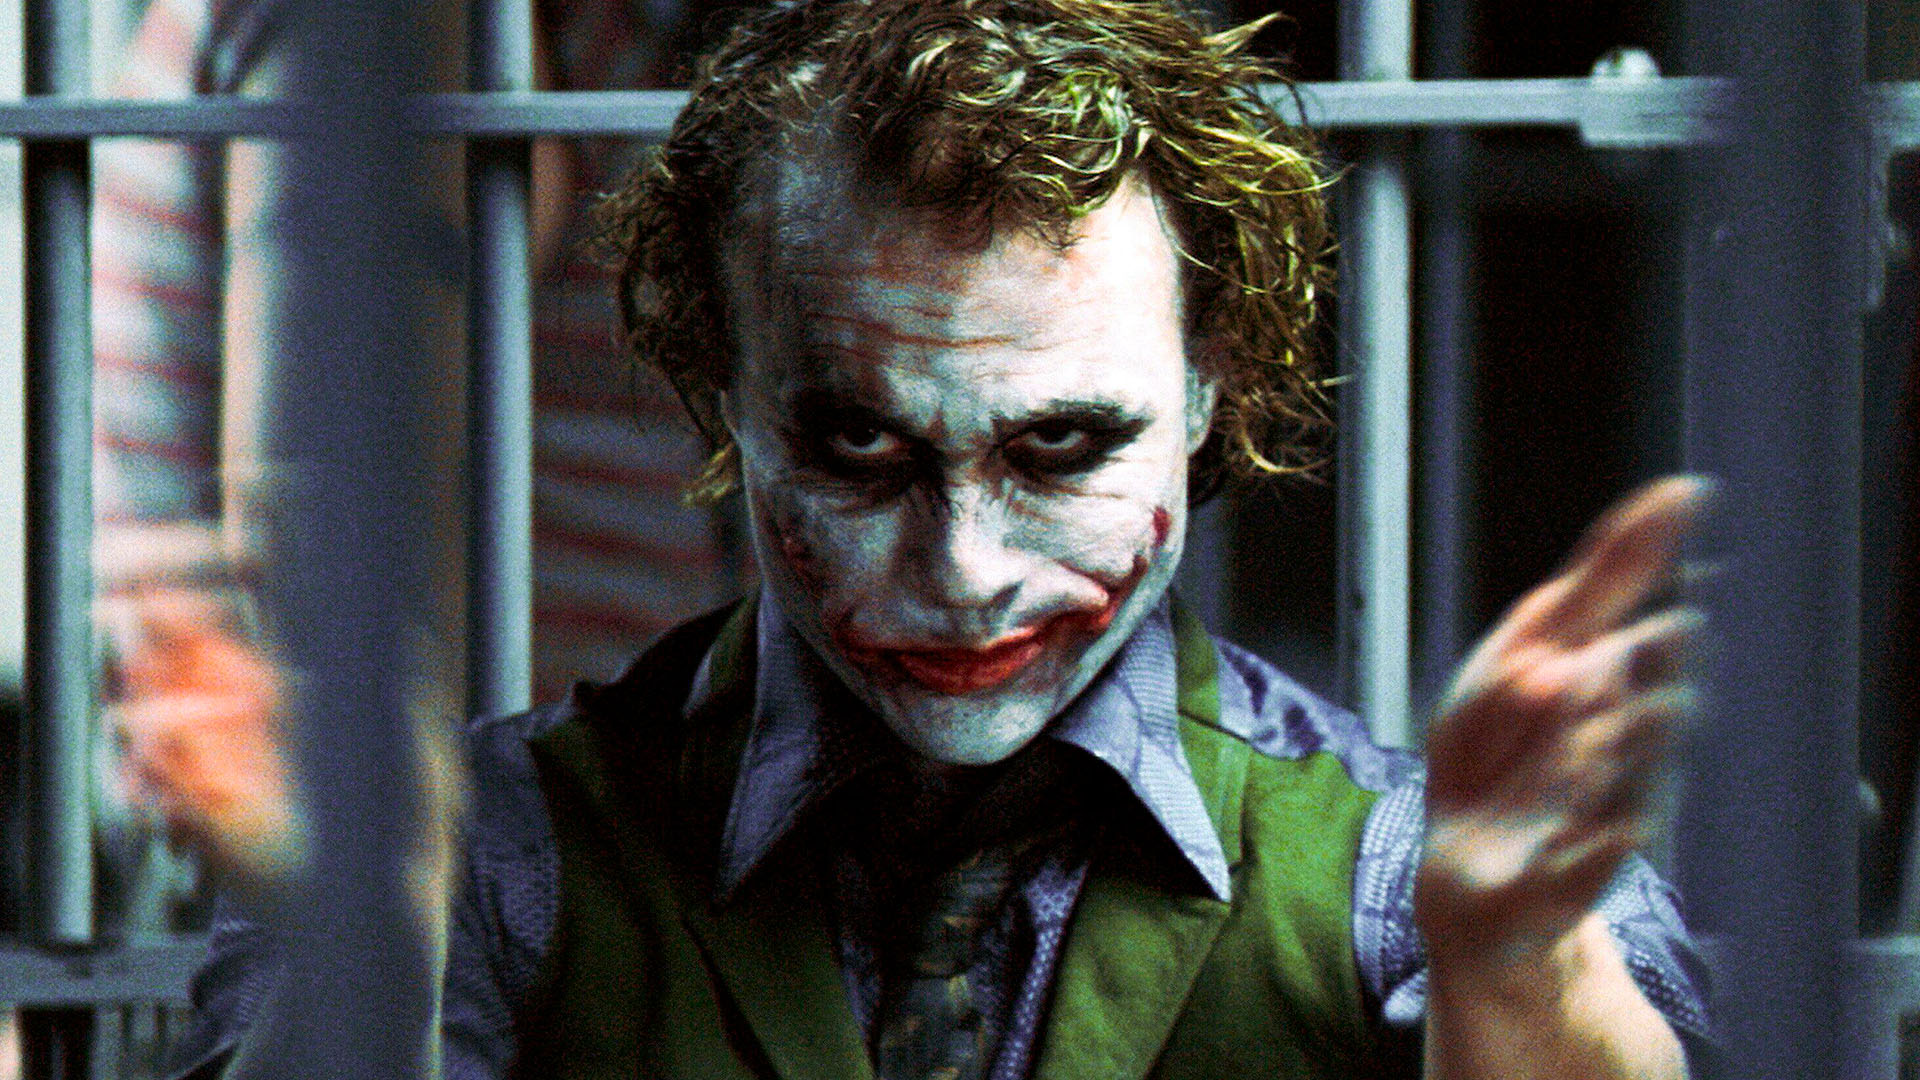 De reden achter de kenmerkende Joker-beweging van Heath Ledger is eenvoudiger dan je zou denken